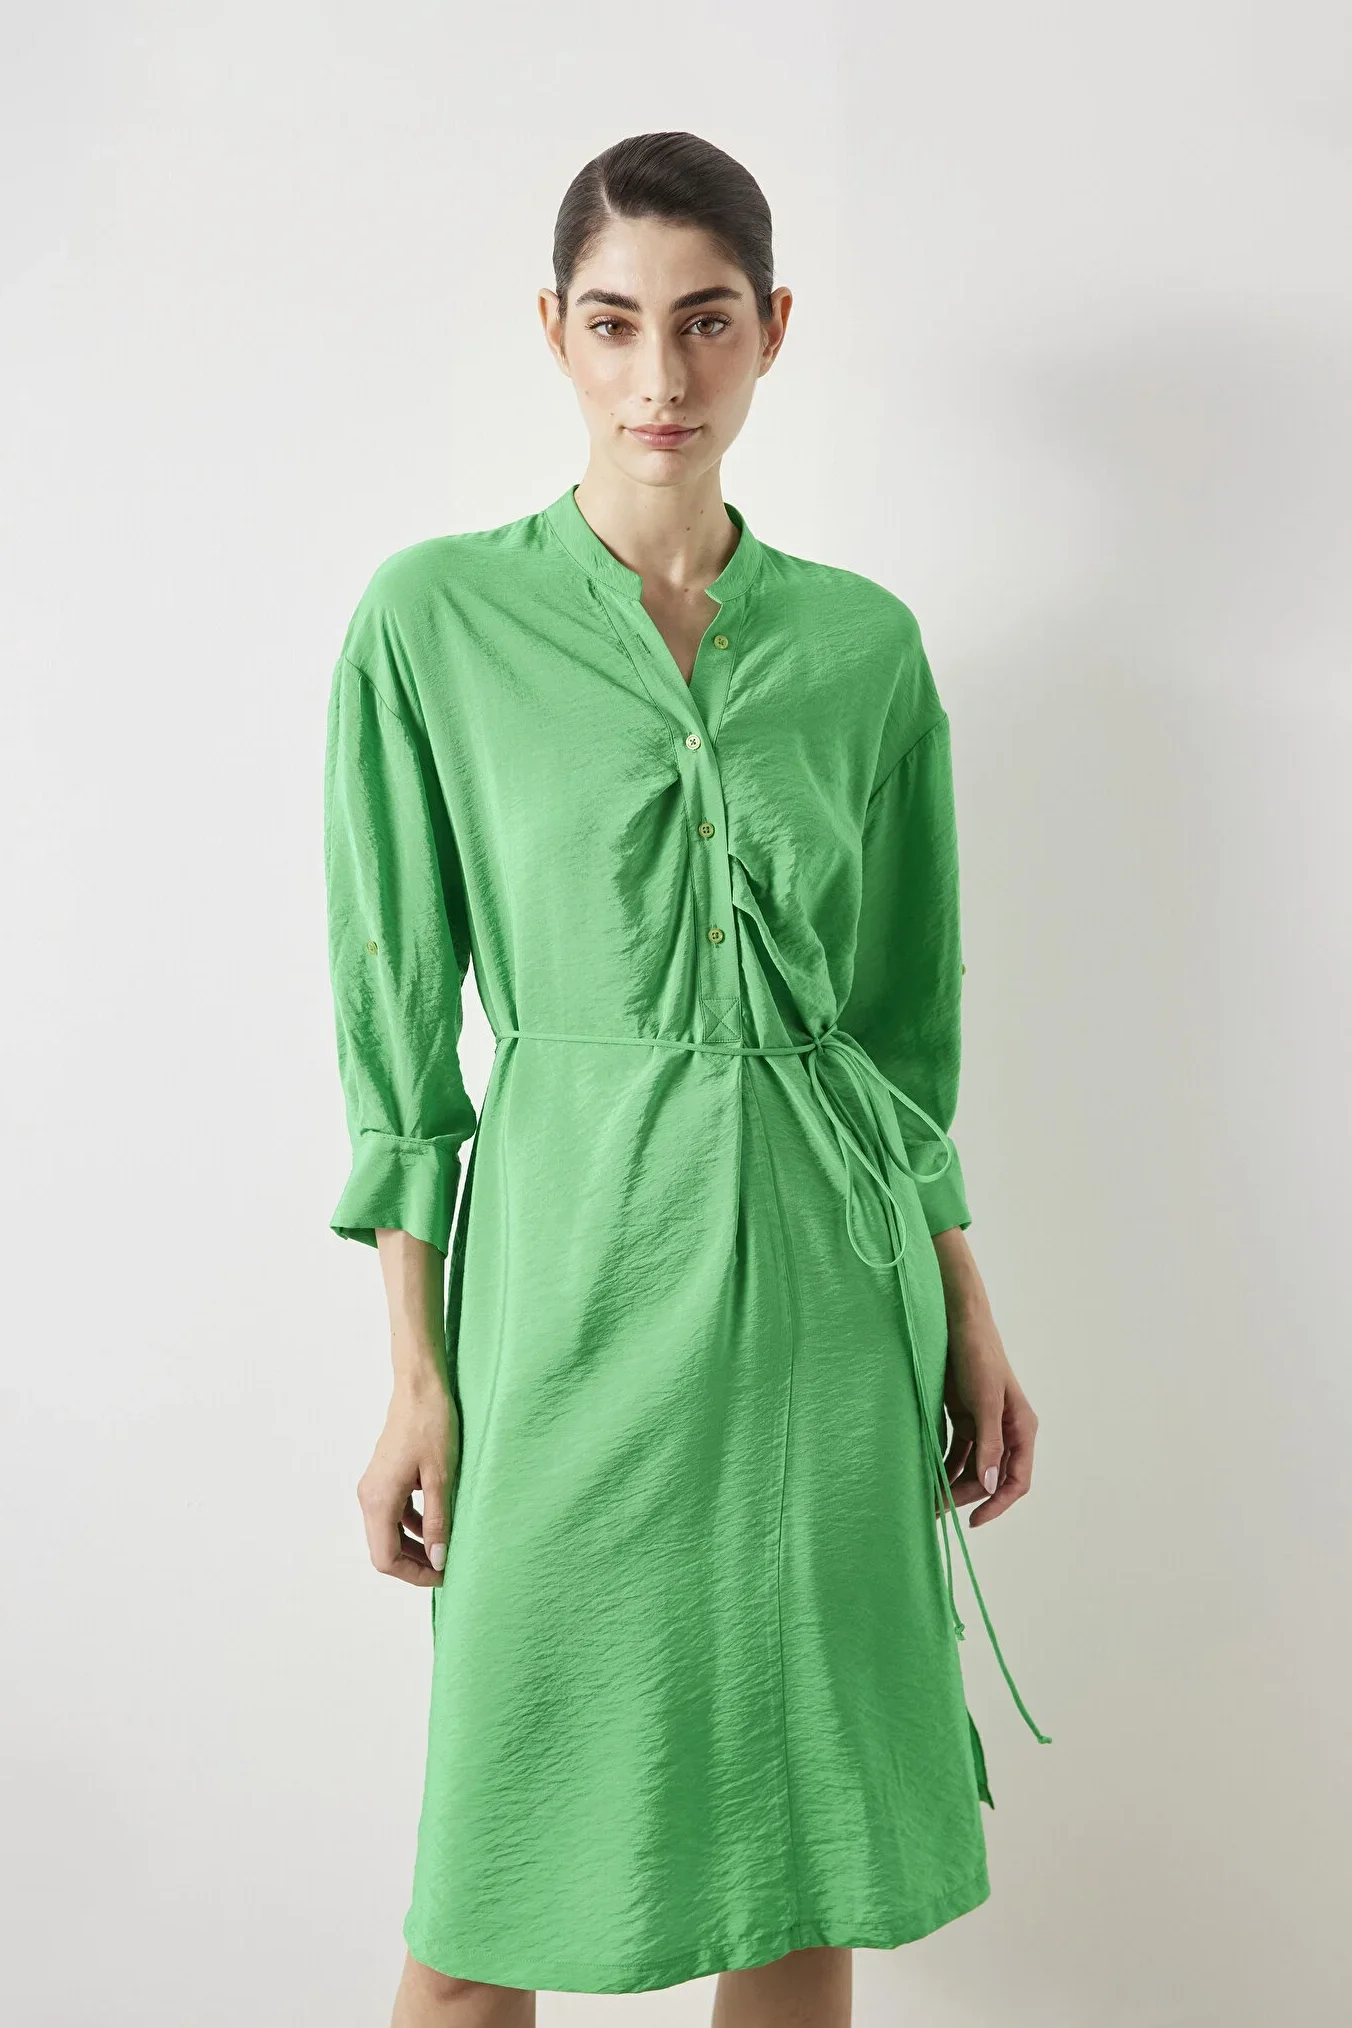 Kadın Hakim Yaka Elbise - Yeşil - 1